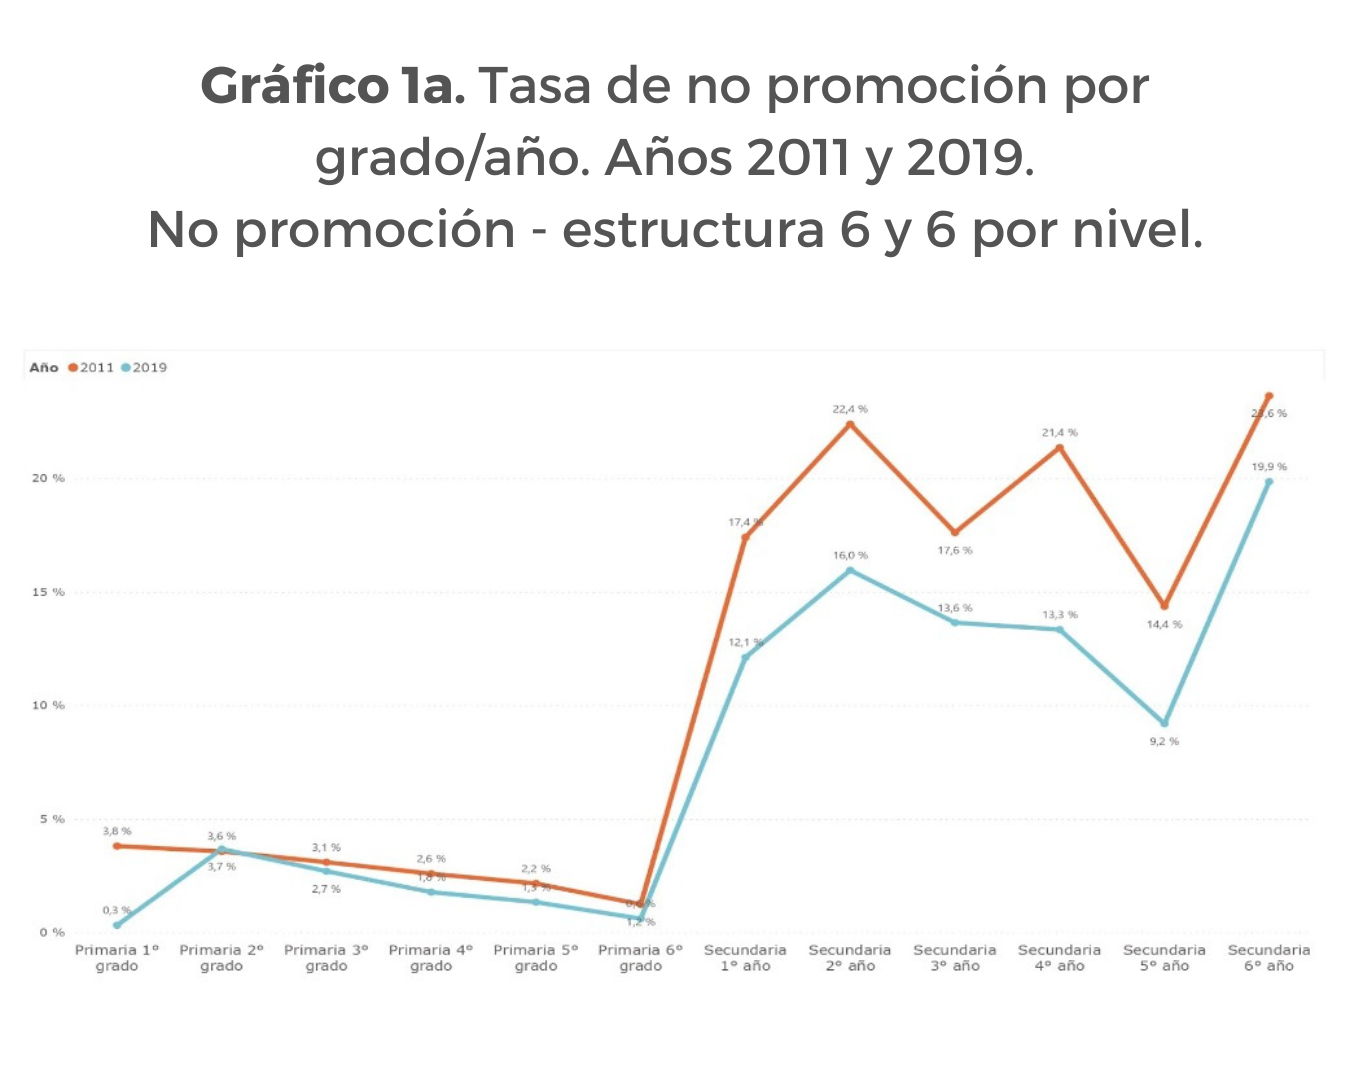 Gráfico 1. Tasa de no promoción por grado/año. Años 2011 y 2019.
A) No promoción - estructura 6 y 6 por nivel.